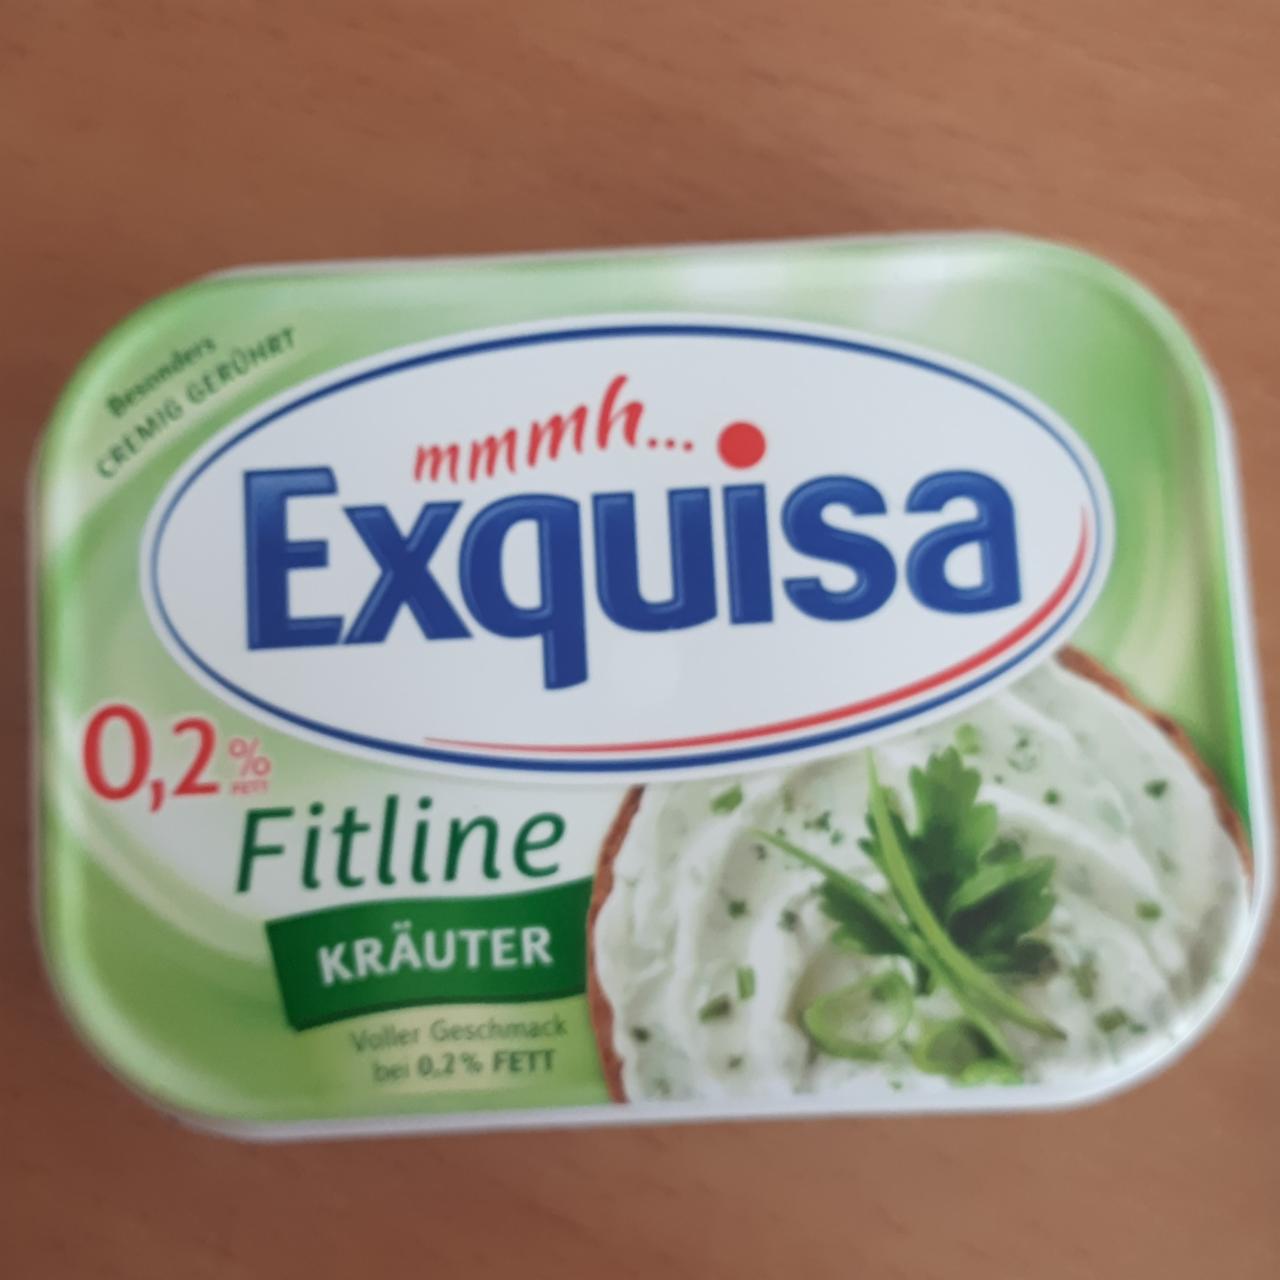 Фото - творожный сыр с зеленью 0.2% fett Kräuter Exquisa